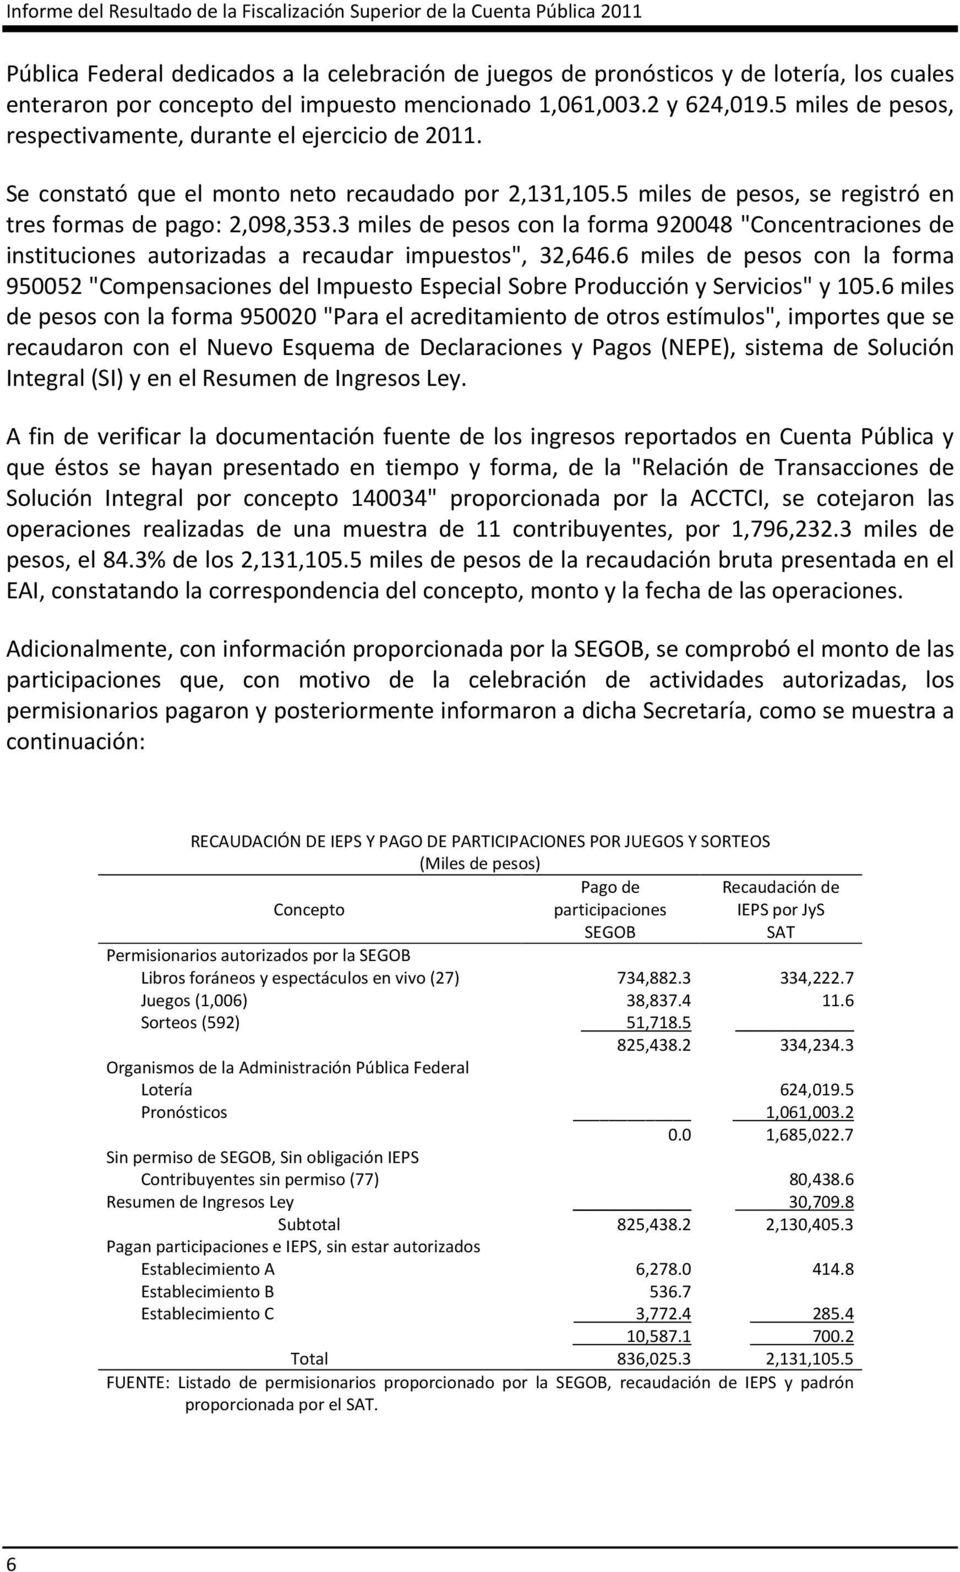 5 miles de pesos, se registró en tres formas de pago: 2,098,353.3 miles de pesos con la forma 920048 "Concentraciones de instituciones autorizadas a recaudar impuestos", 32,646.